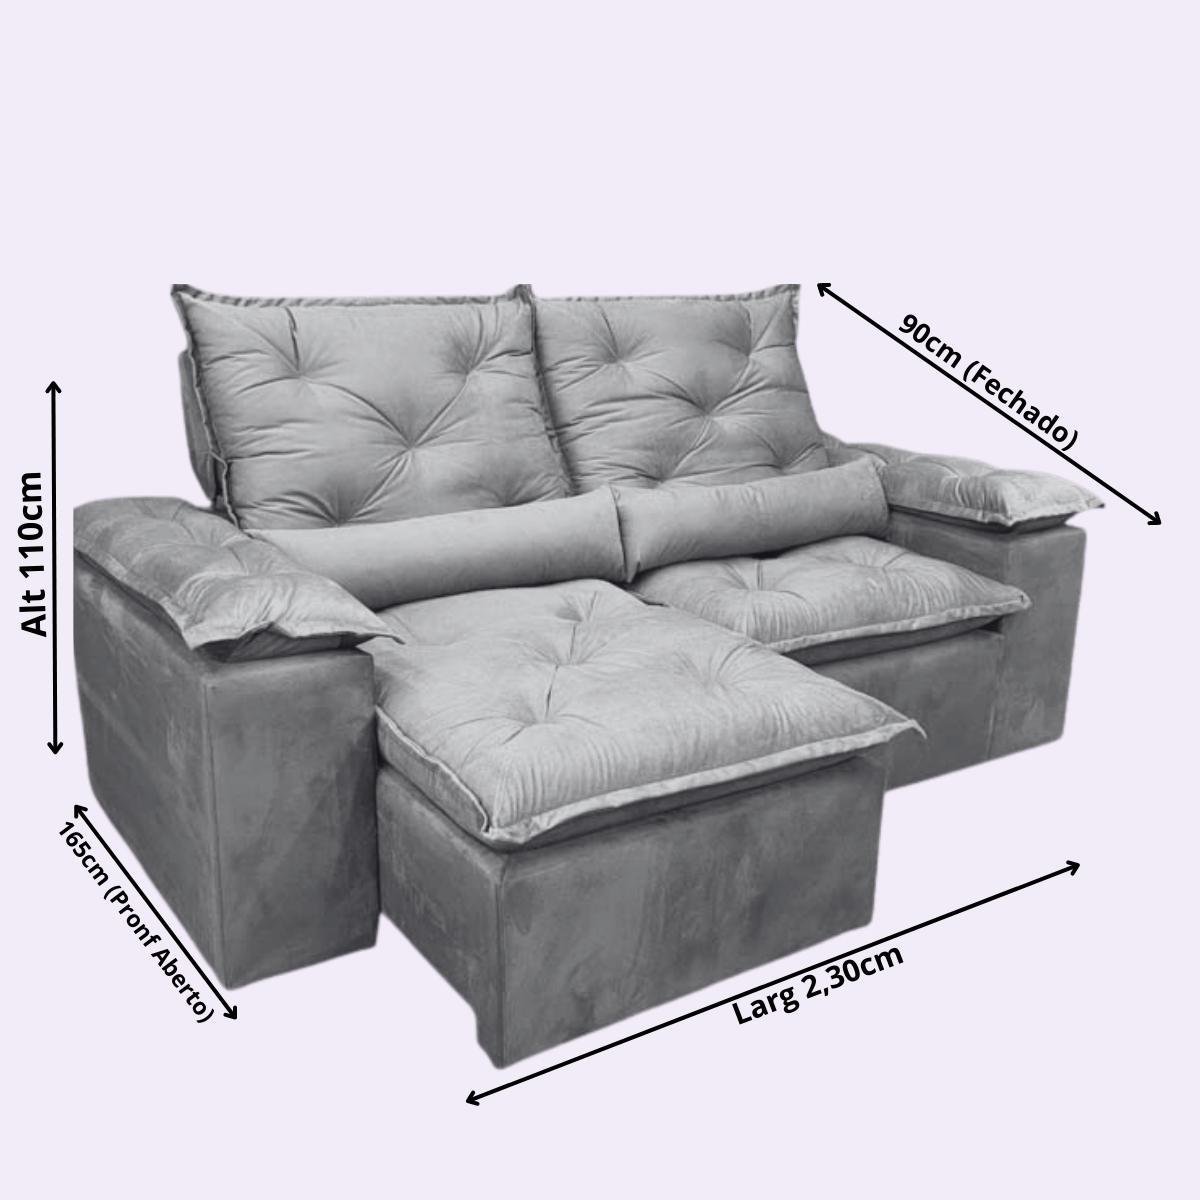 Sofa Reclinavel Retratil Design Elegante Athena 2,30m Veludo Cor:Terracota - 5